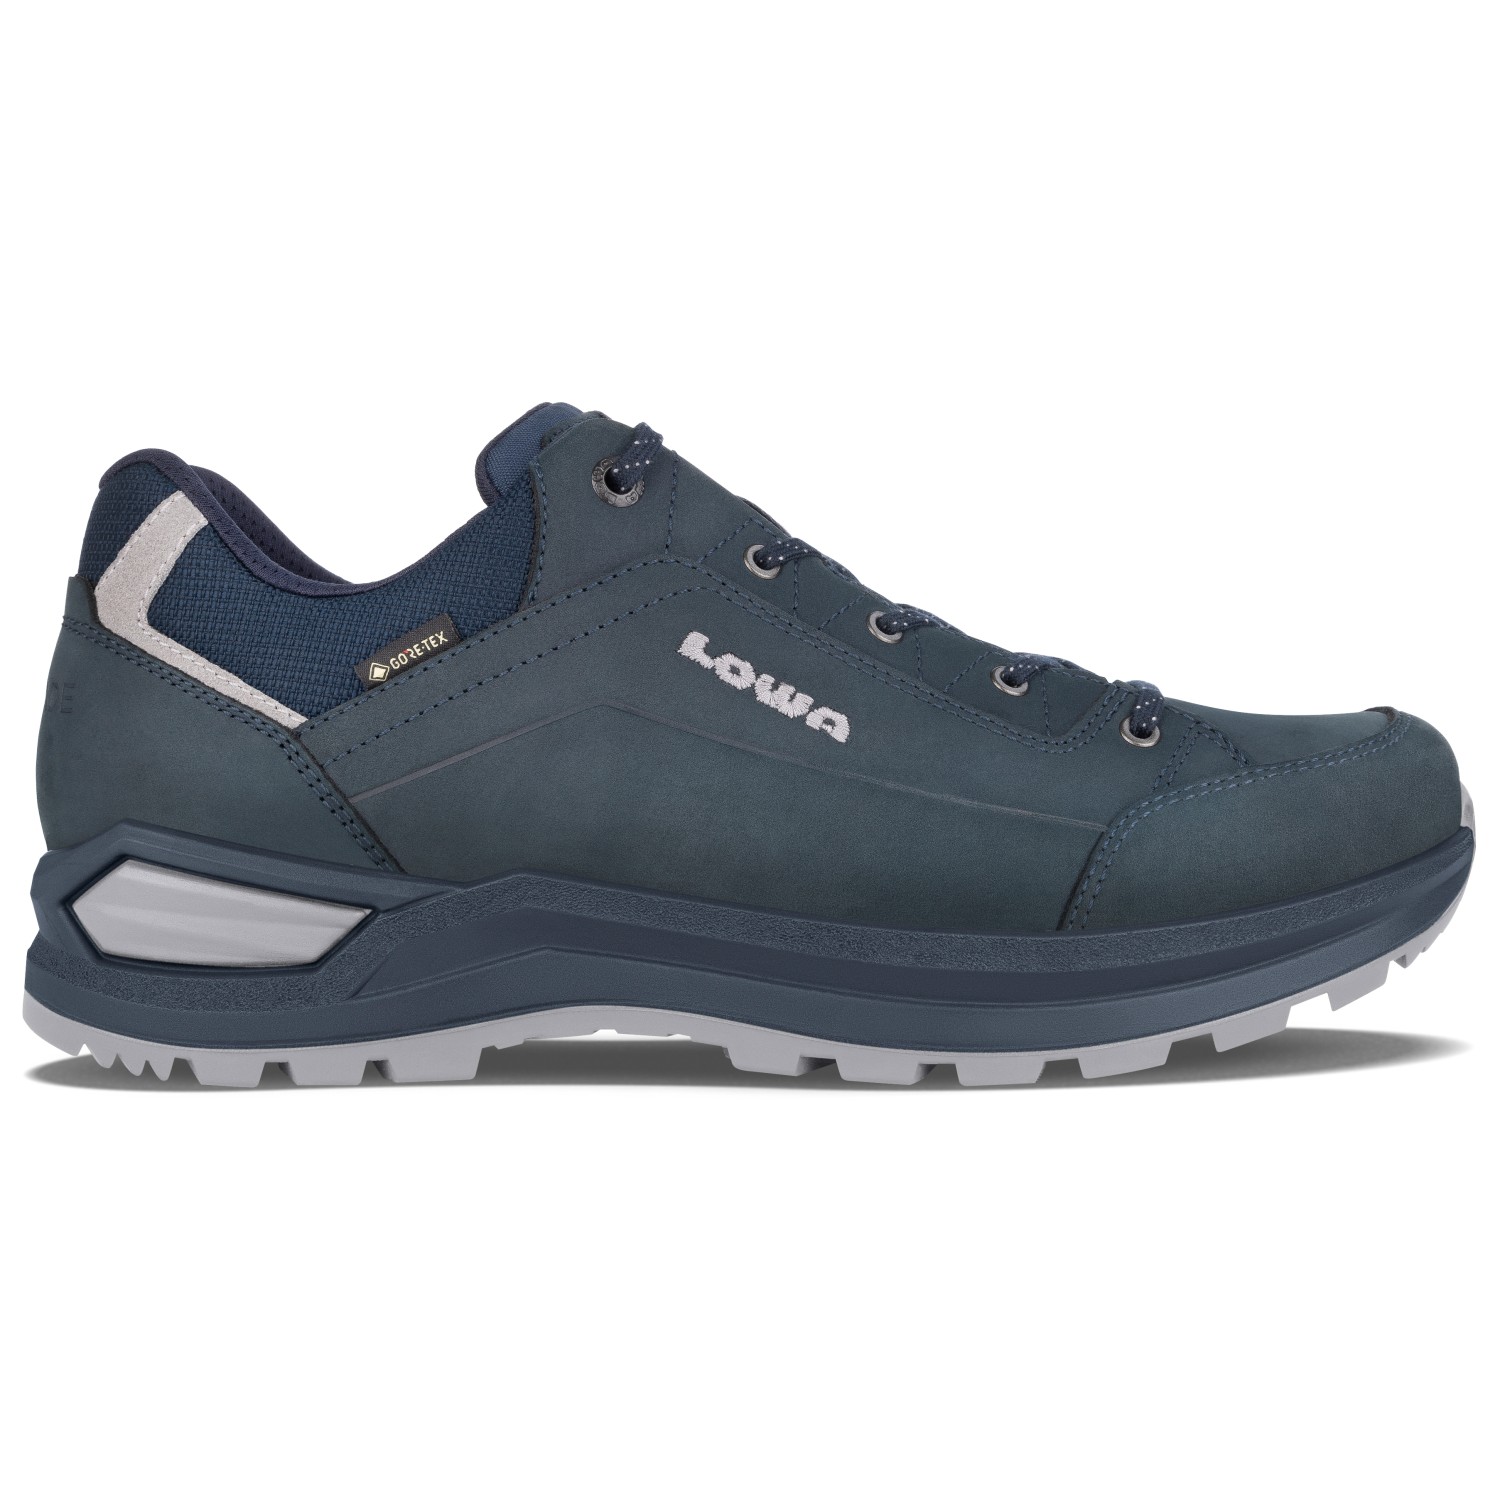 Мультиспортивная обувь Lowa Renegade Evo GTX Lo, цвет Navy/Stone